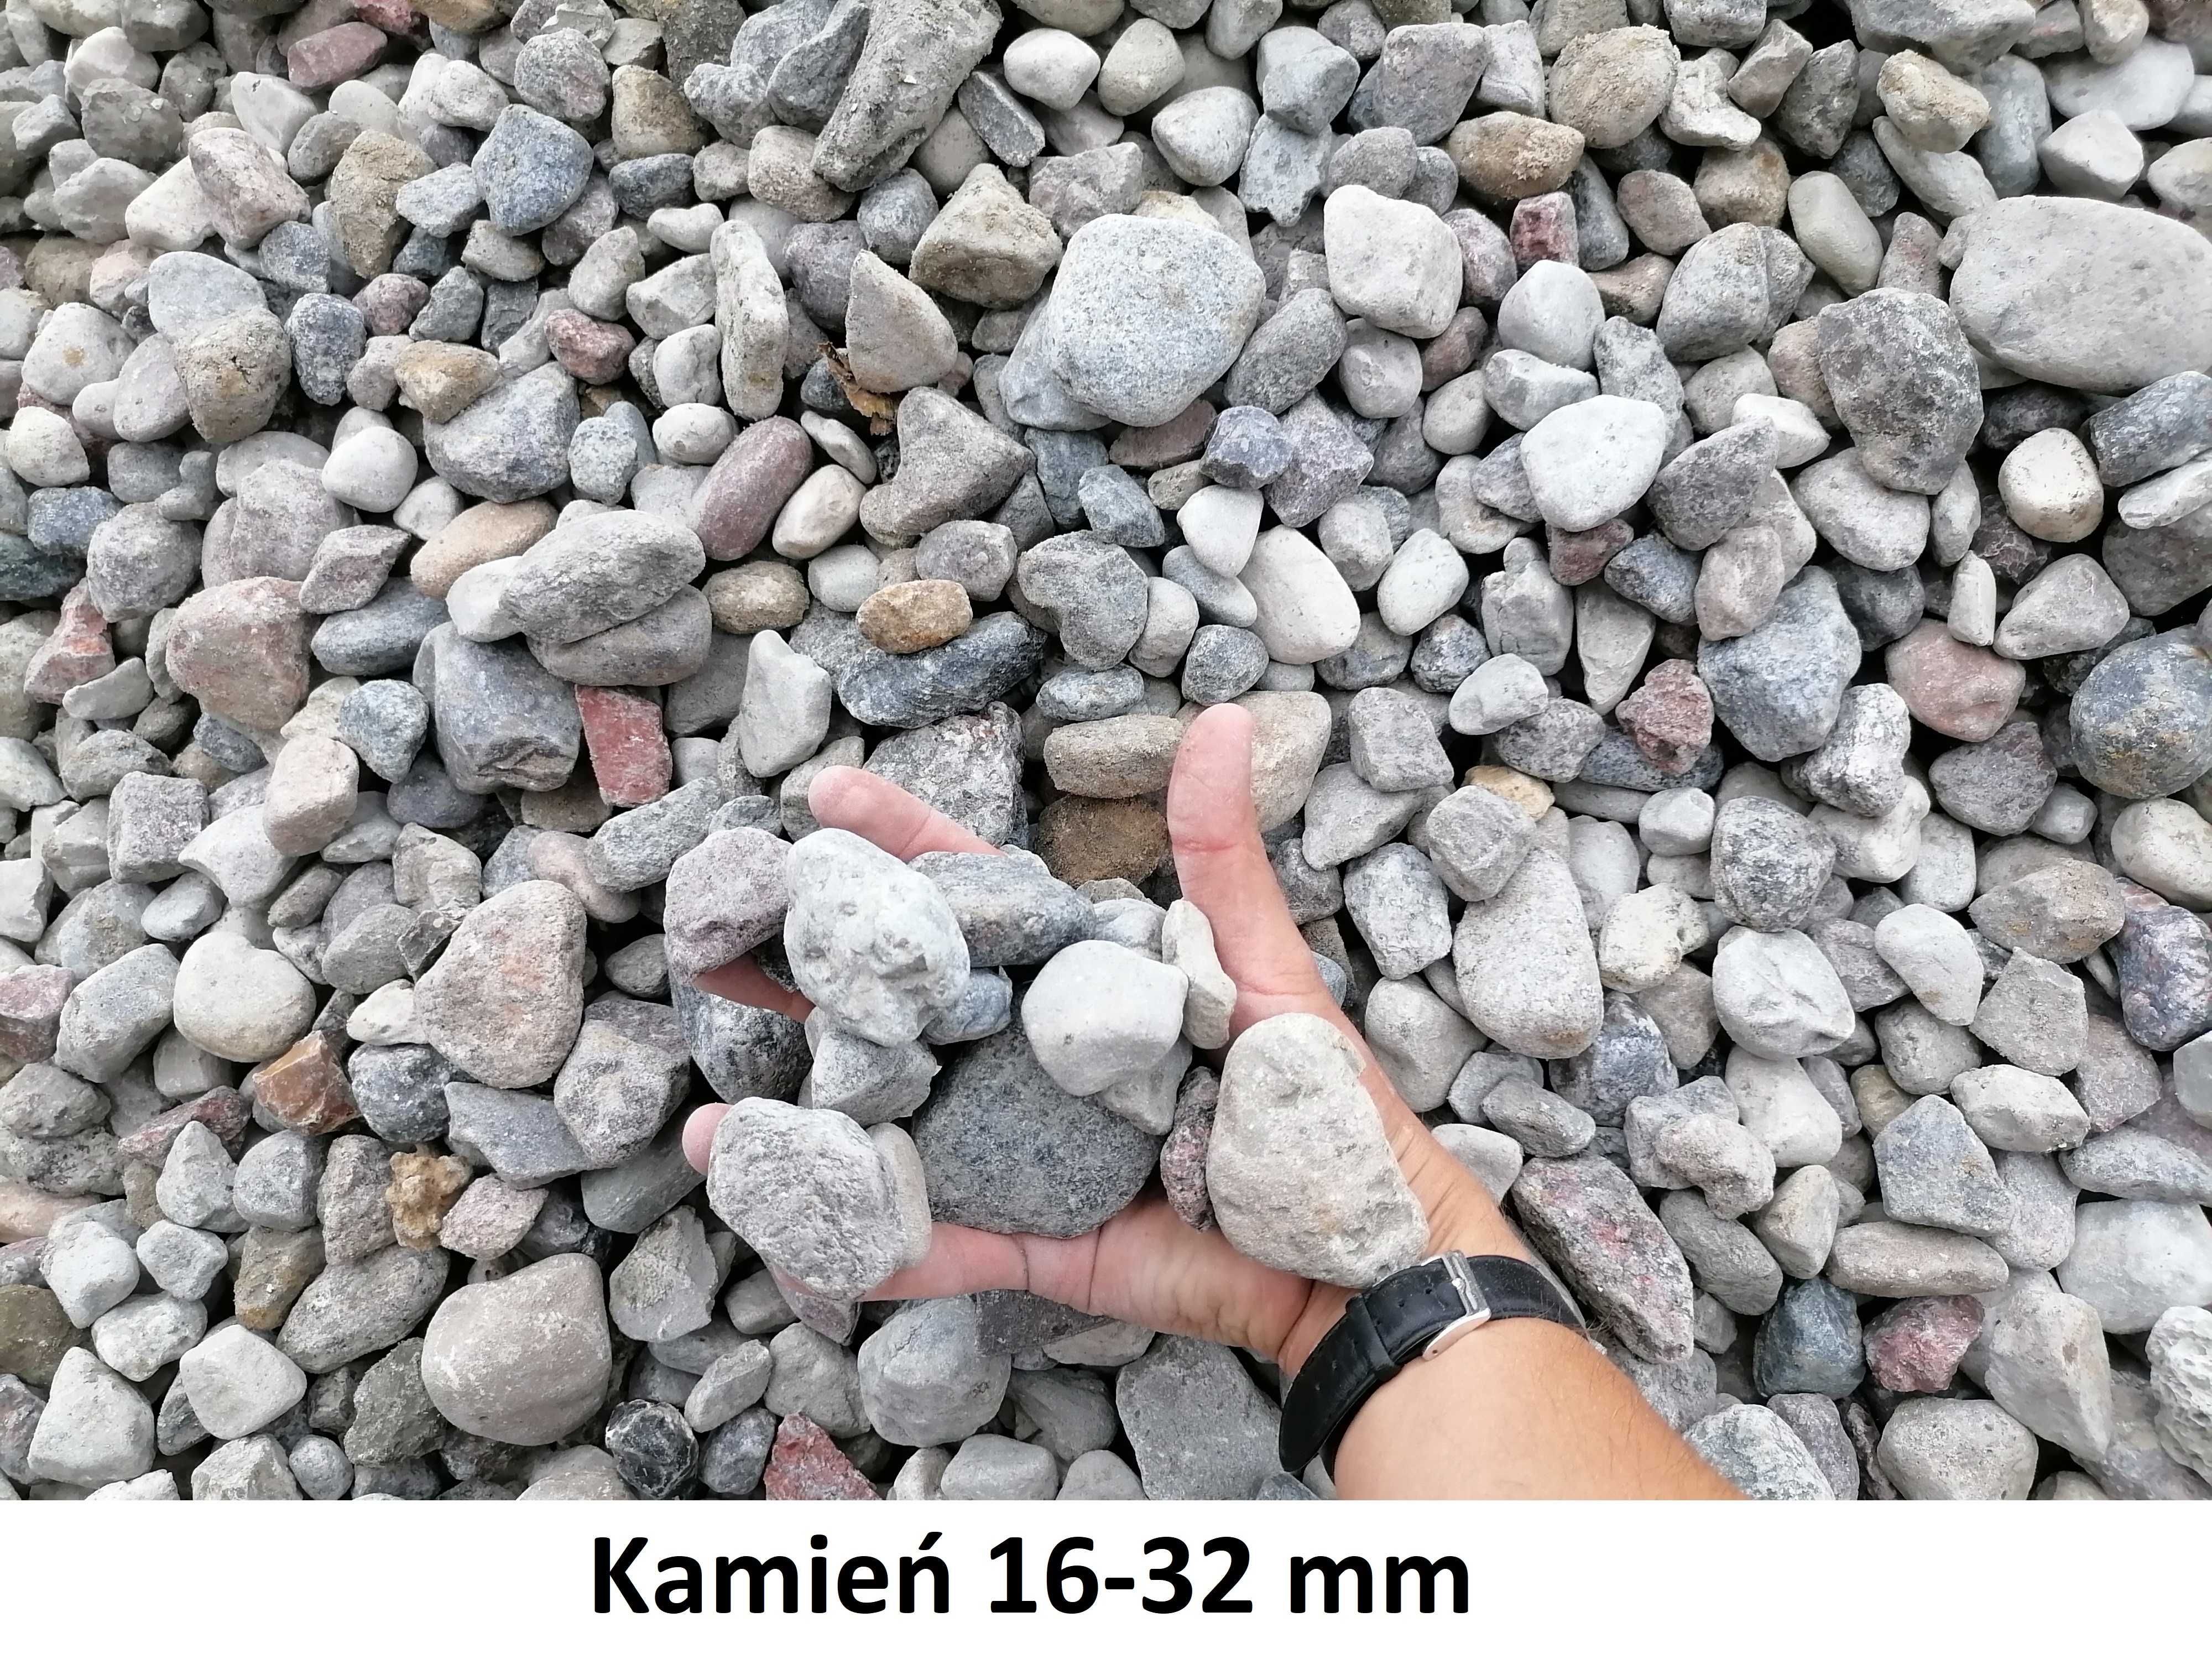 Kamień otoczak 2-8 mm,8-16 mm,16-32 mm. Żwir ogrodowy ozdobny, drenaż